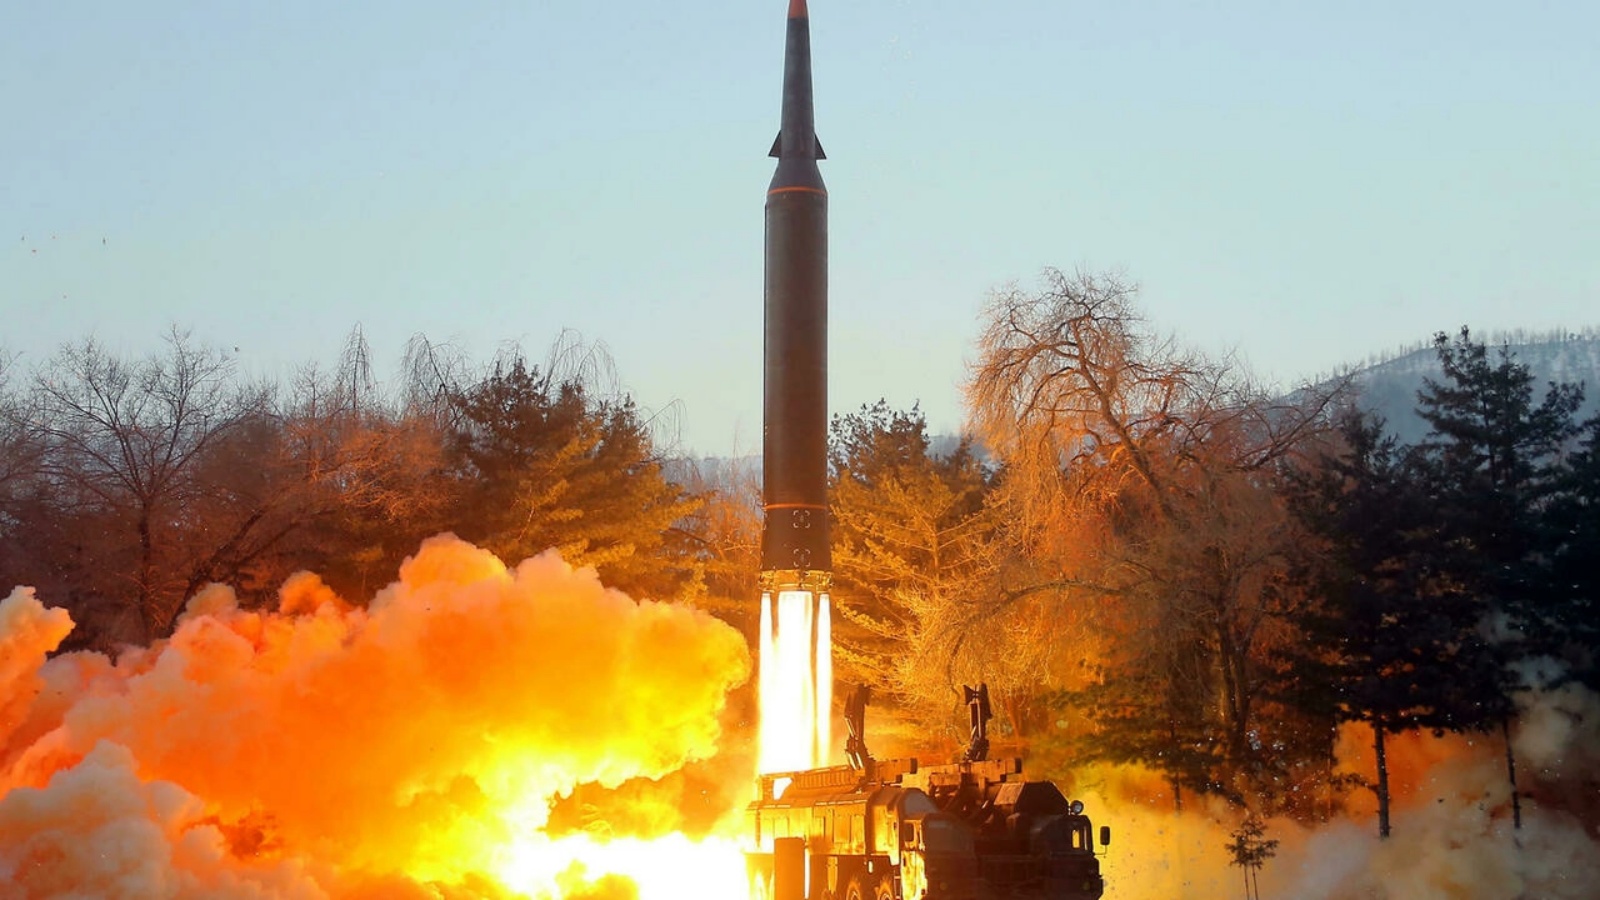 صورة نشرتها وكالة الانباء الكورية الشمالية الرسمية في 6 يناير تظهر ما وصفته بانه اطلاق صاروخ اسرع من الصوت في 5 من الشهر من مكان غير معروف في كوريا الشمالية.